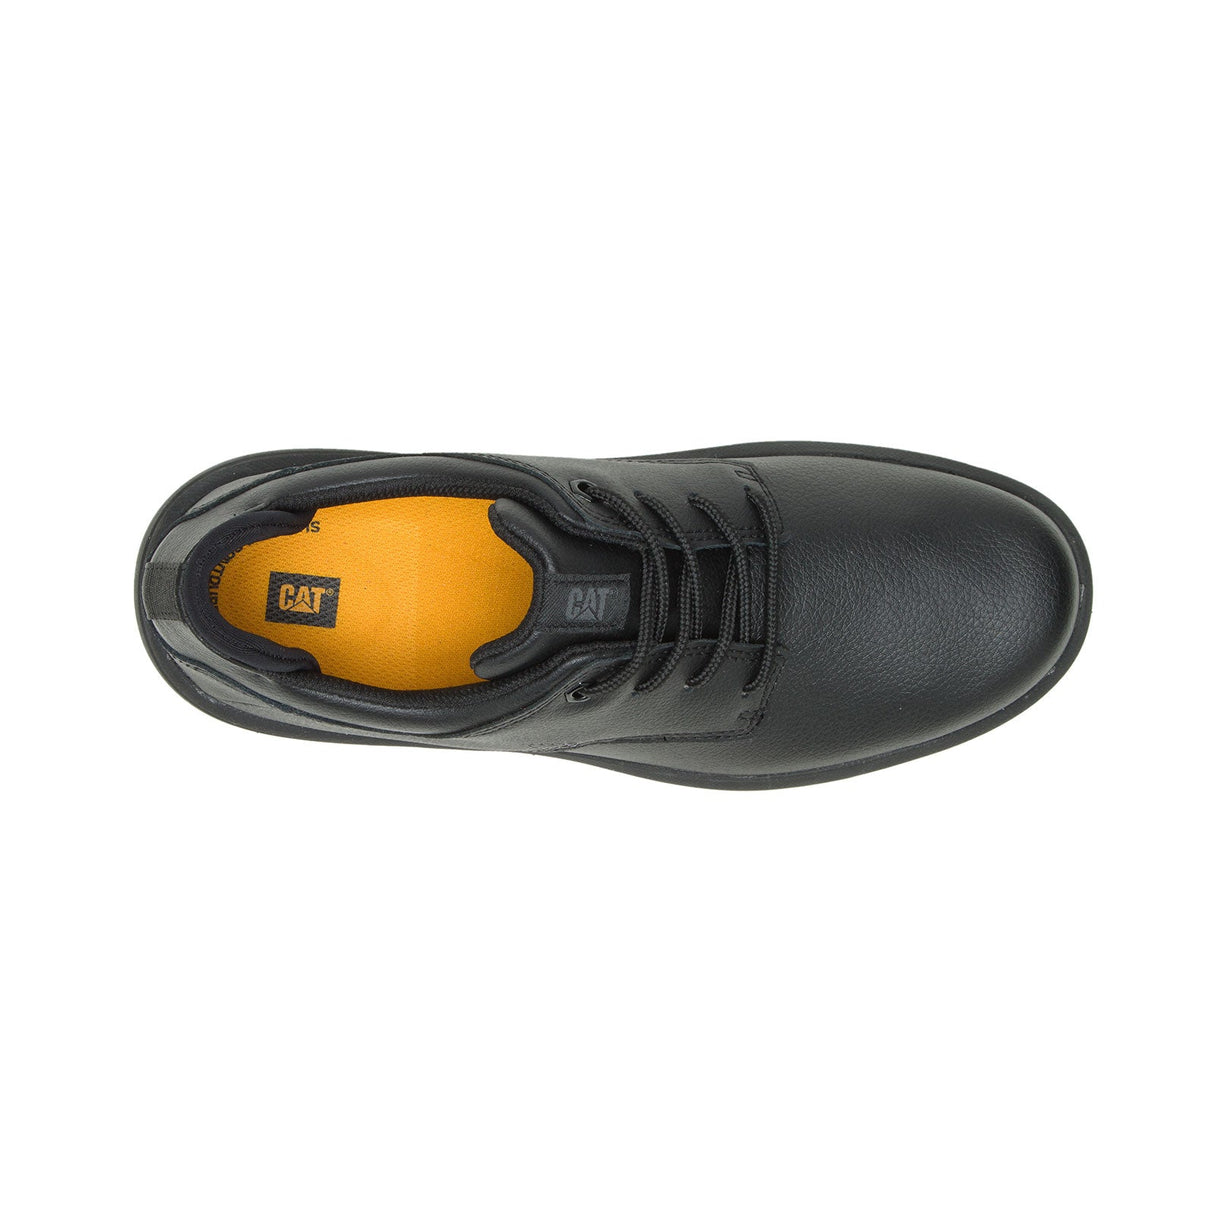 Caterpillar Prorush Sr+ Oxford Women's Slip Resistant Shoes P51047-6